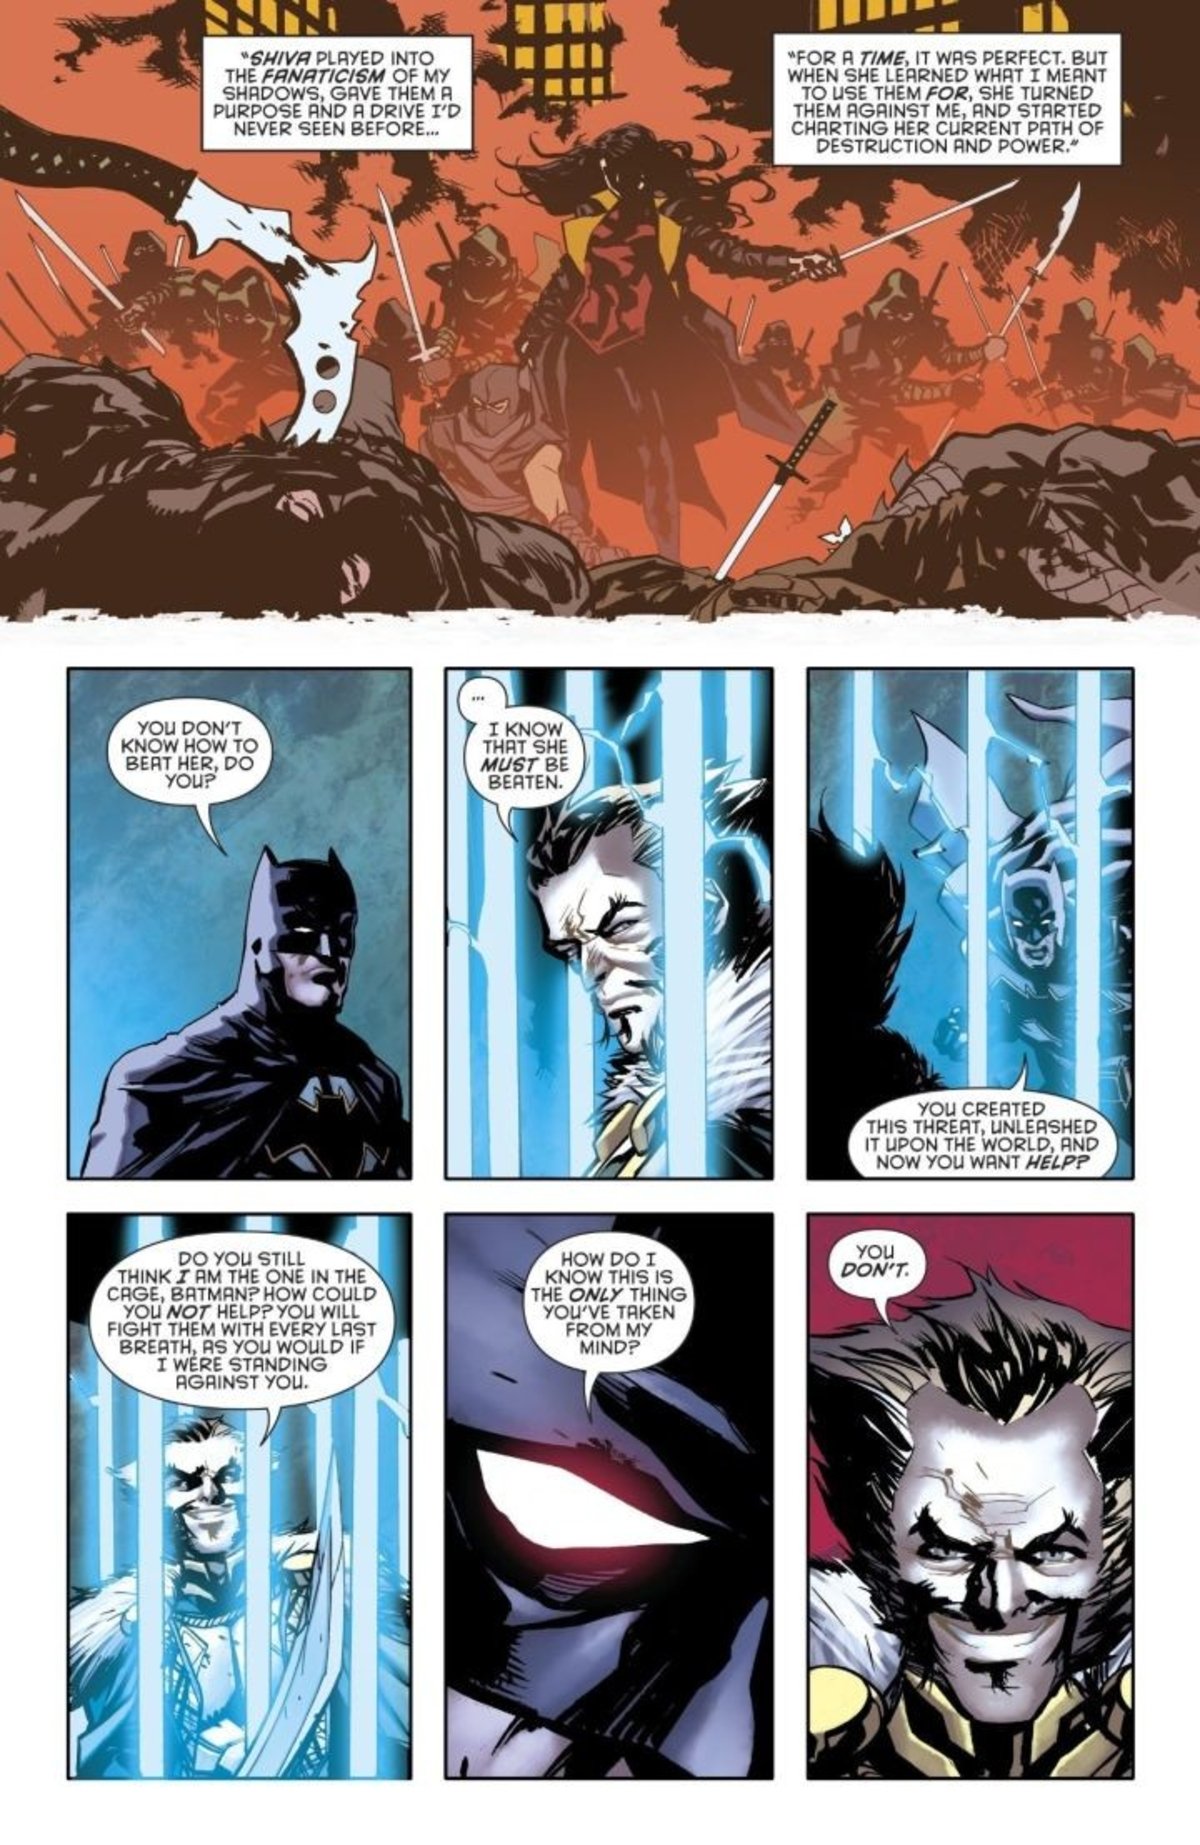 Batman descubre el secreto de la Liga de las Sombras en los cómics